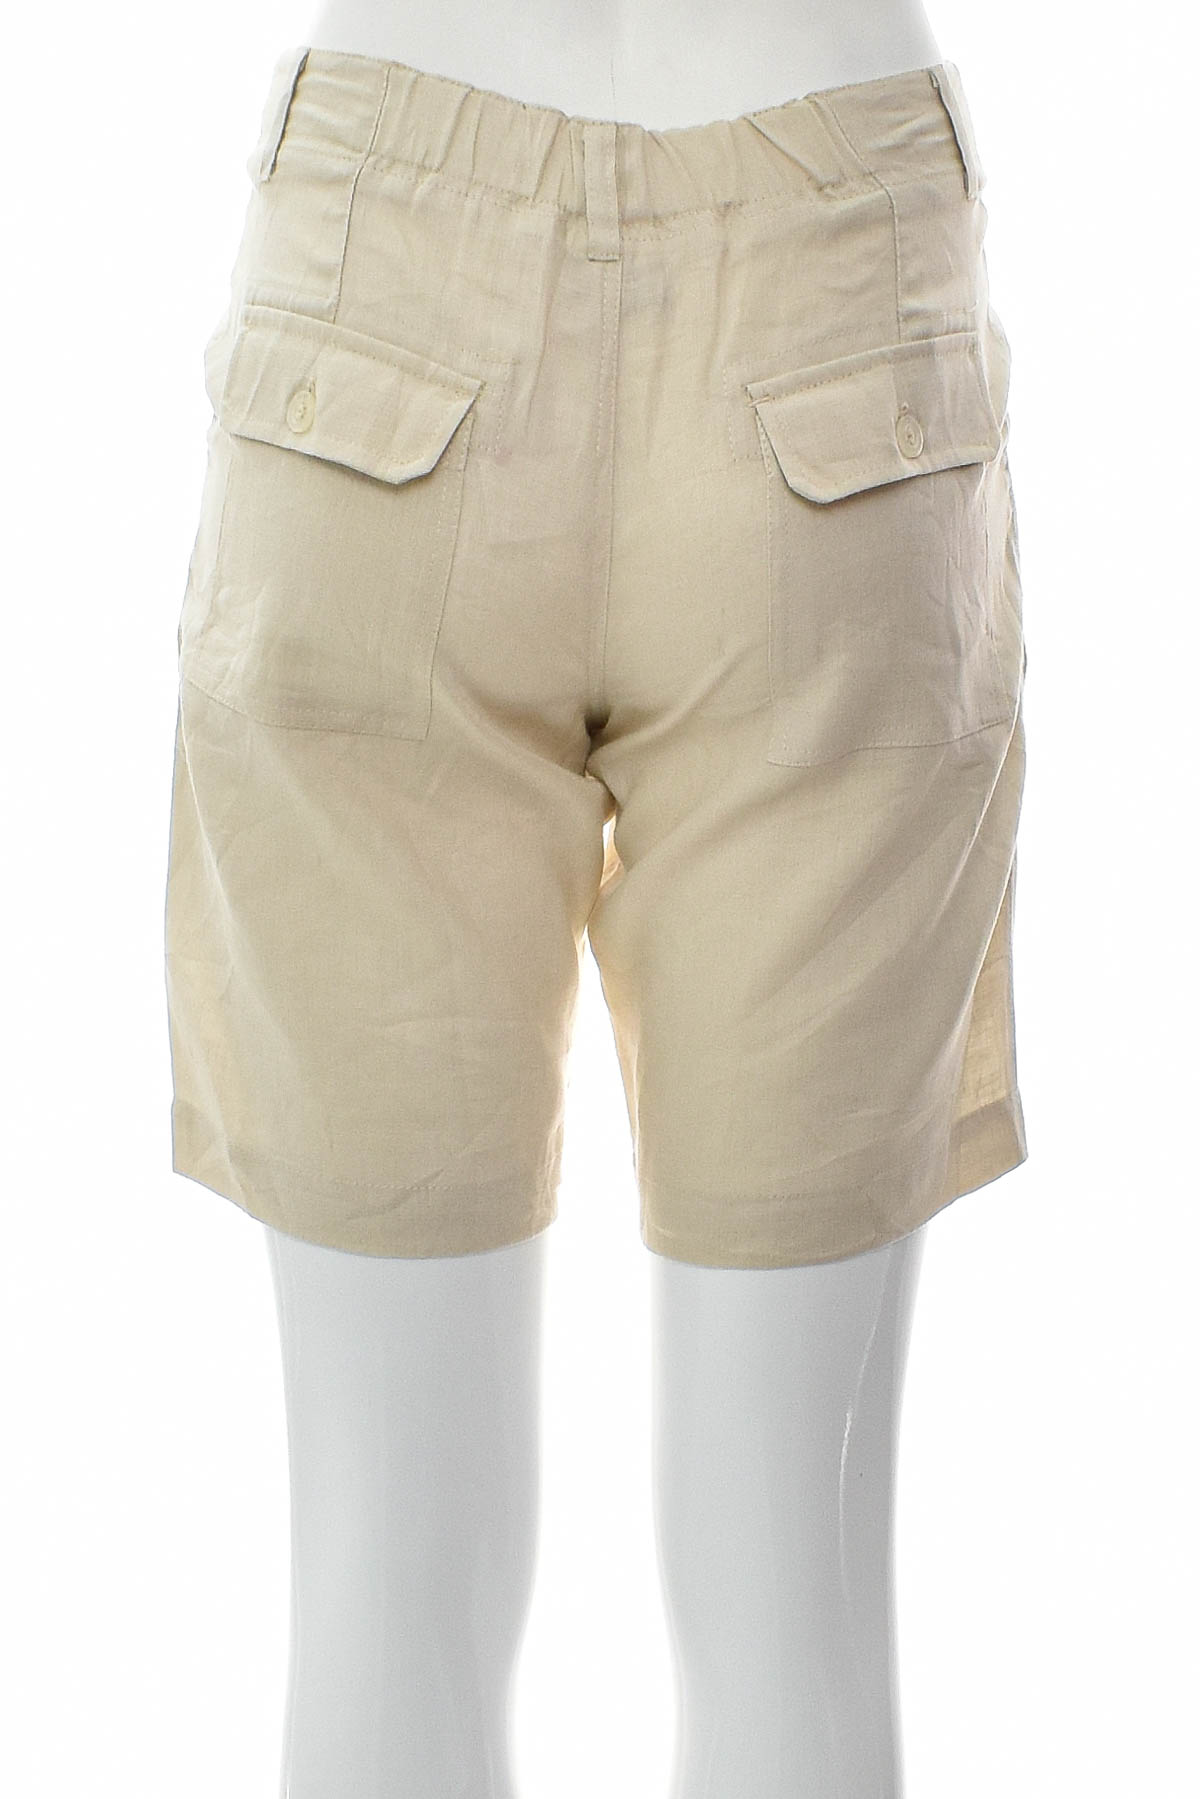 Female shorts - Island Importer - 1